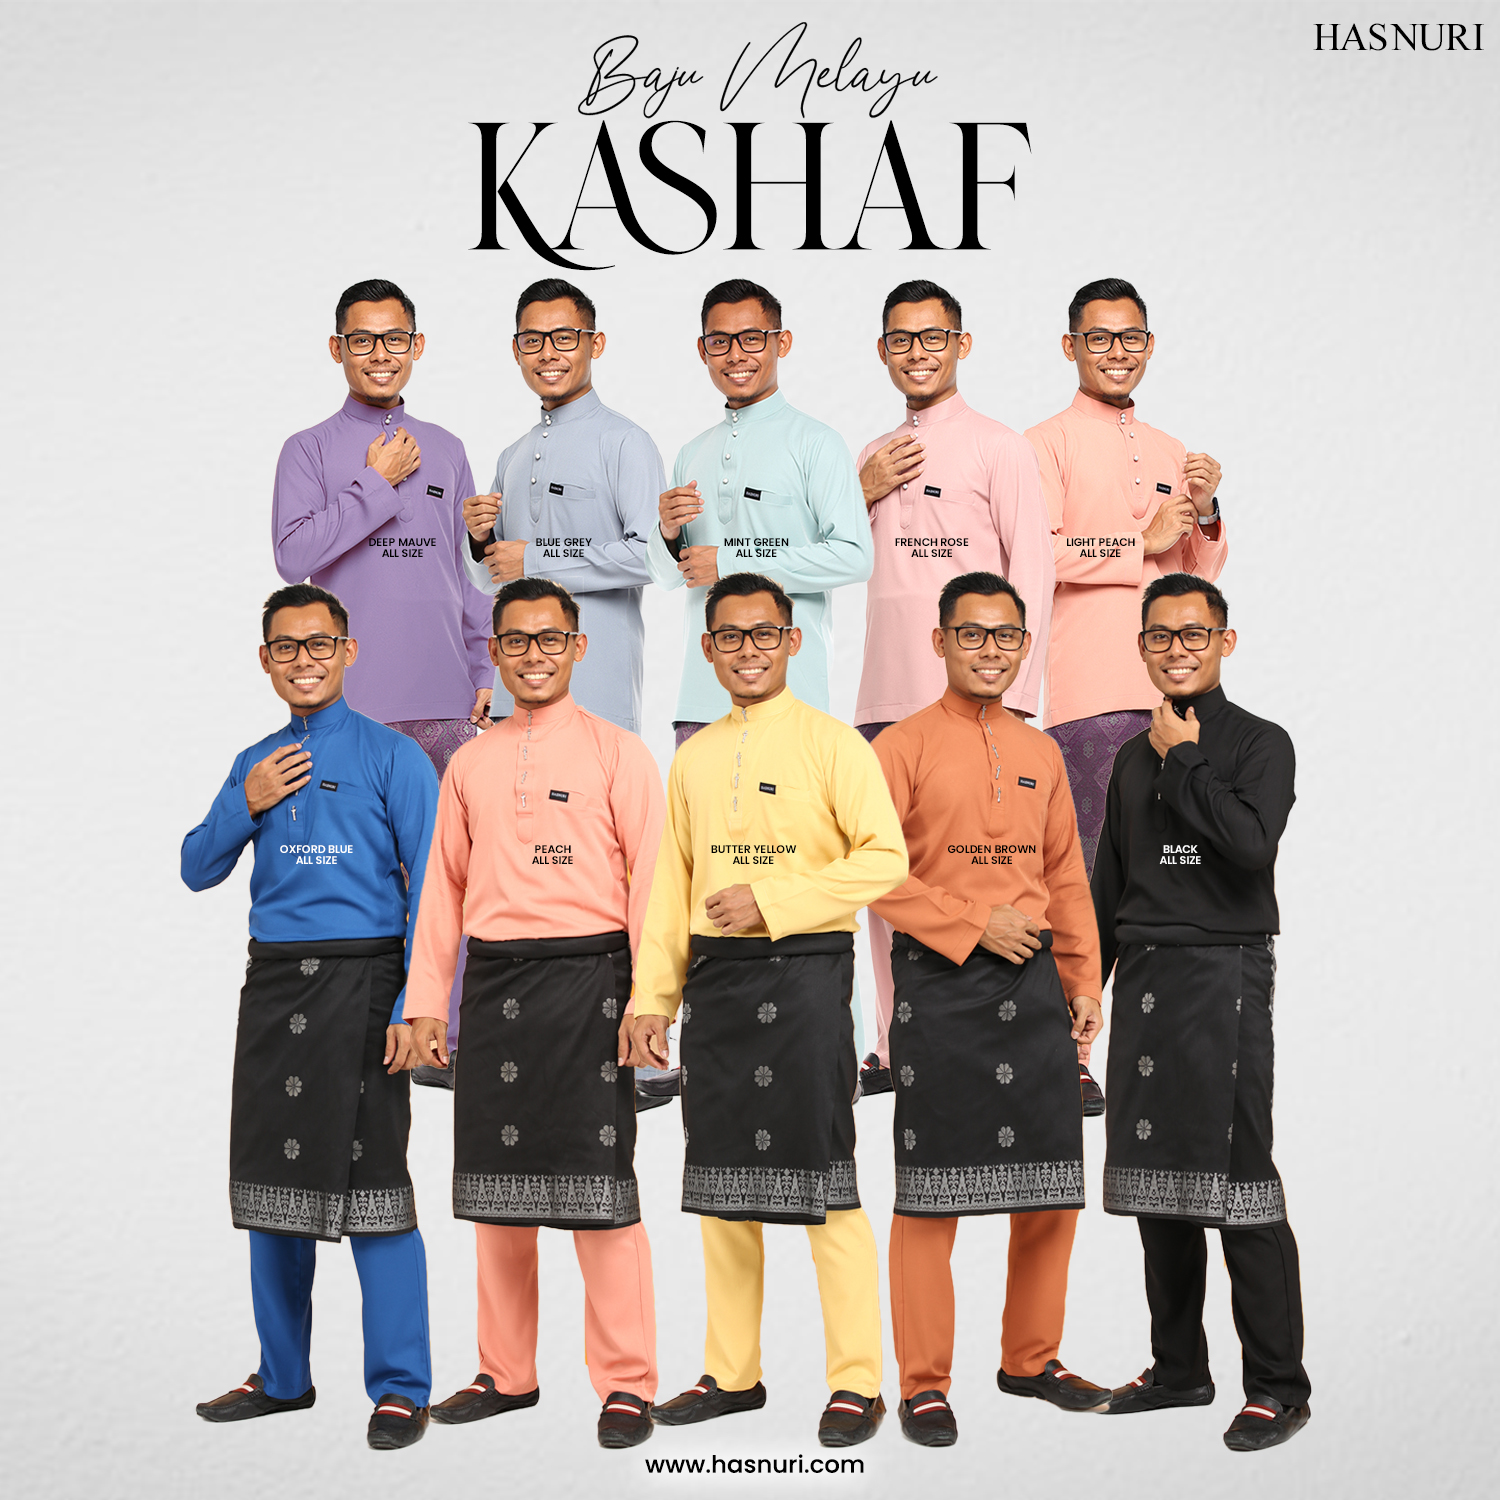 Baju Melayu Kashaf - Oxford Blue